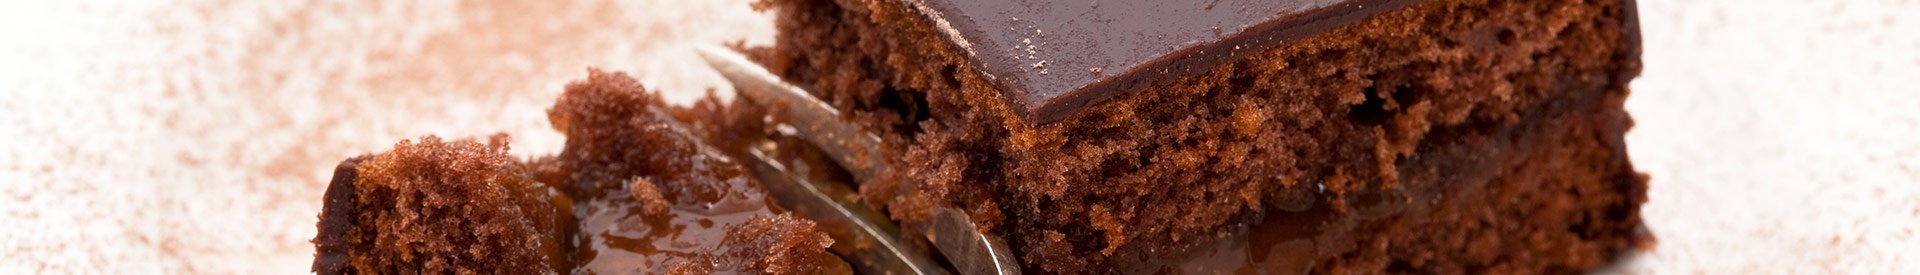 header recepten chocoladetaart met jam en rum geurts conservenfabriek